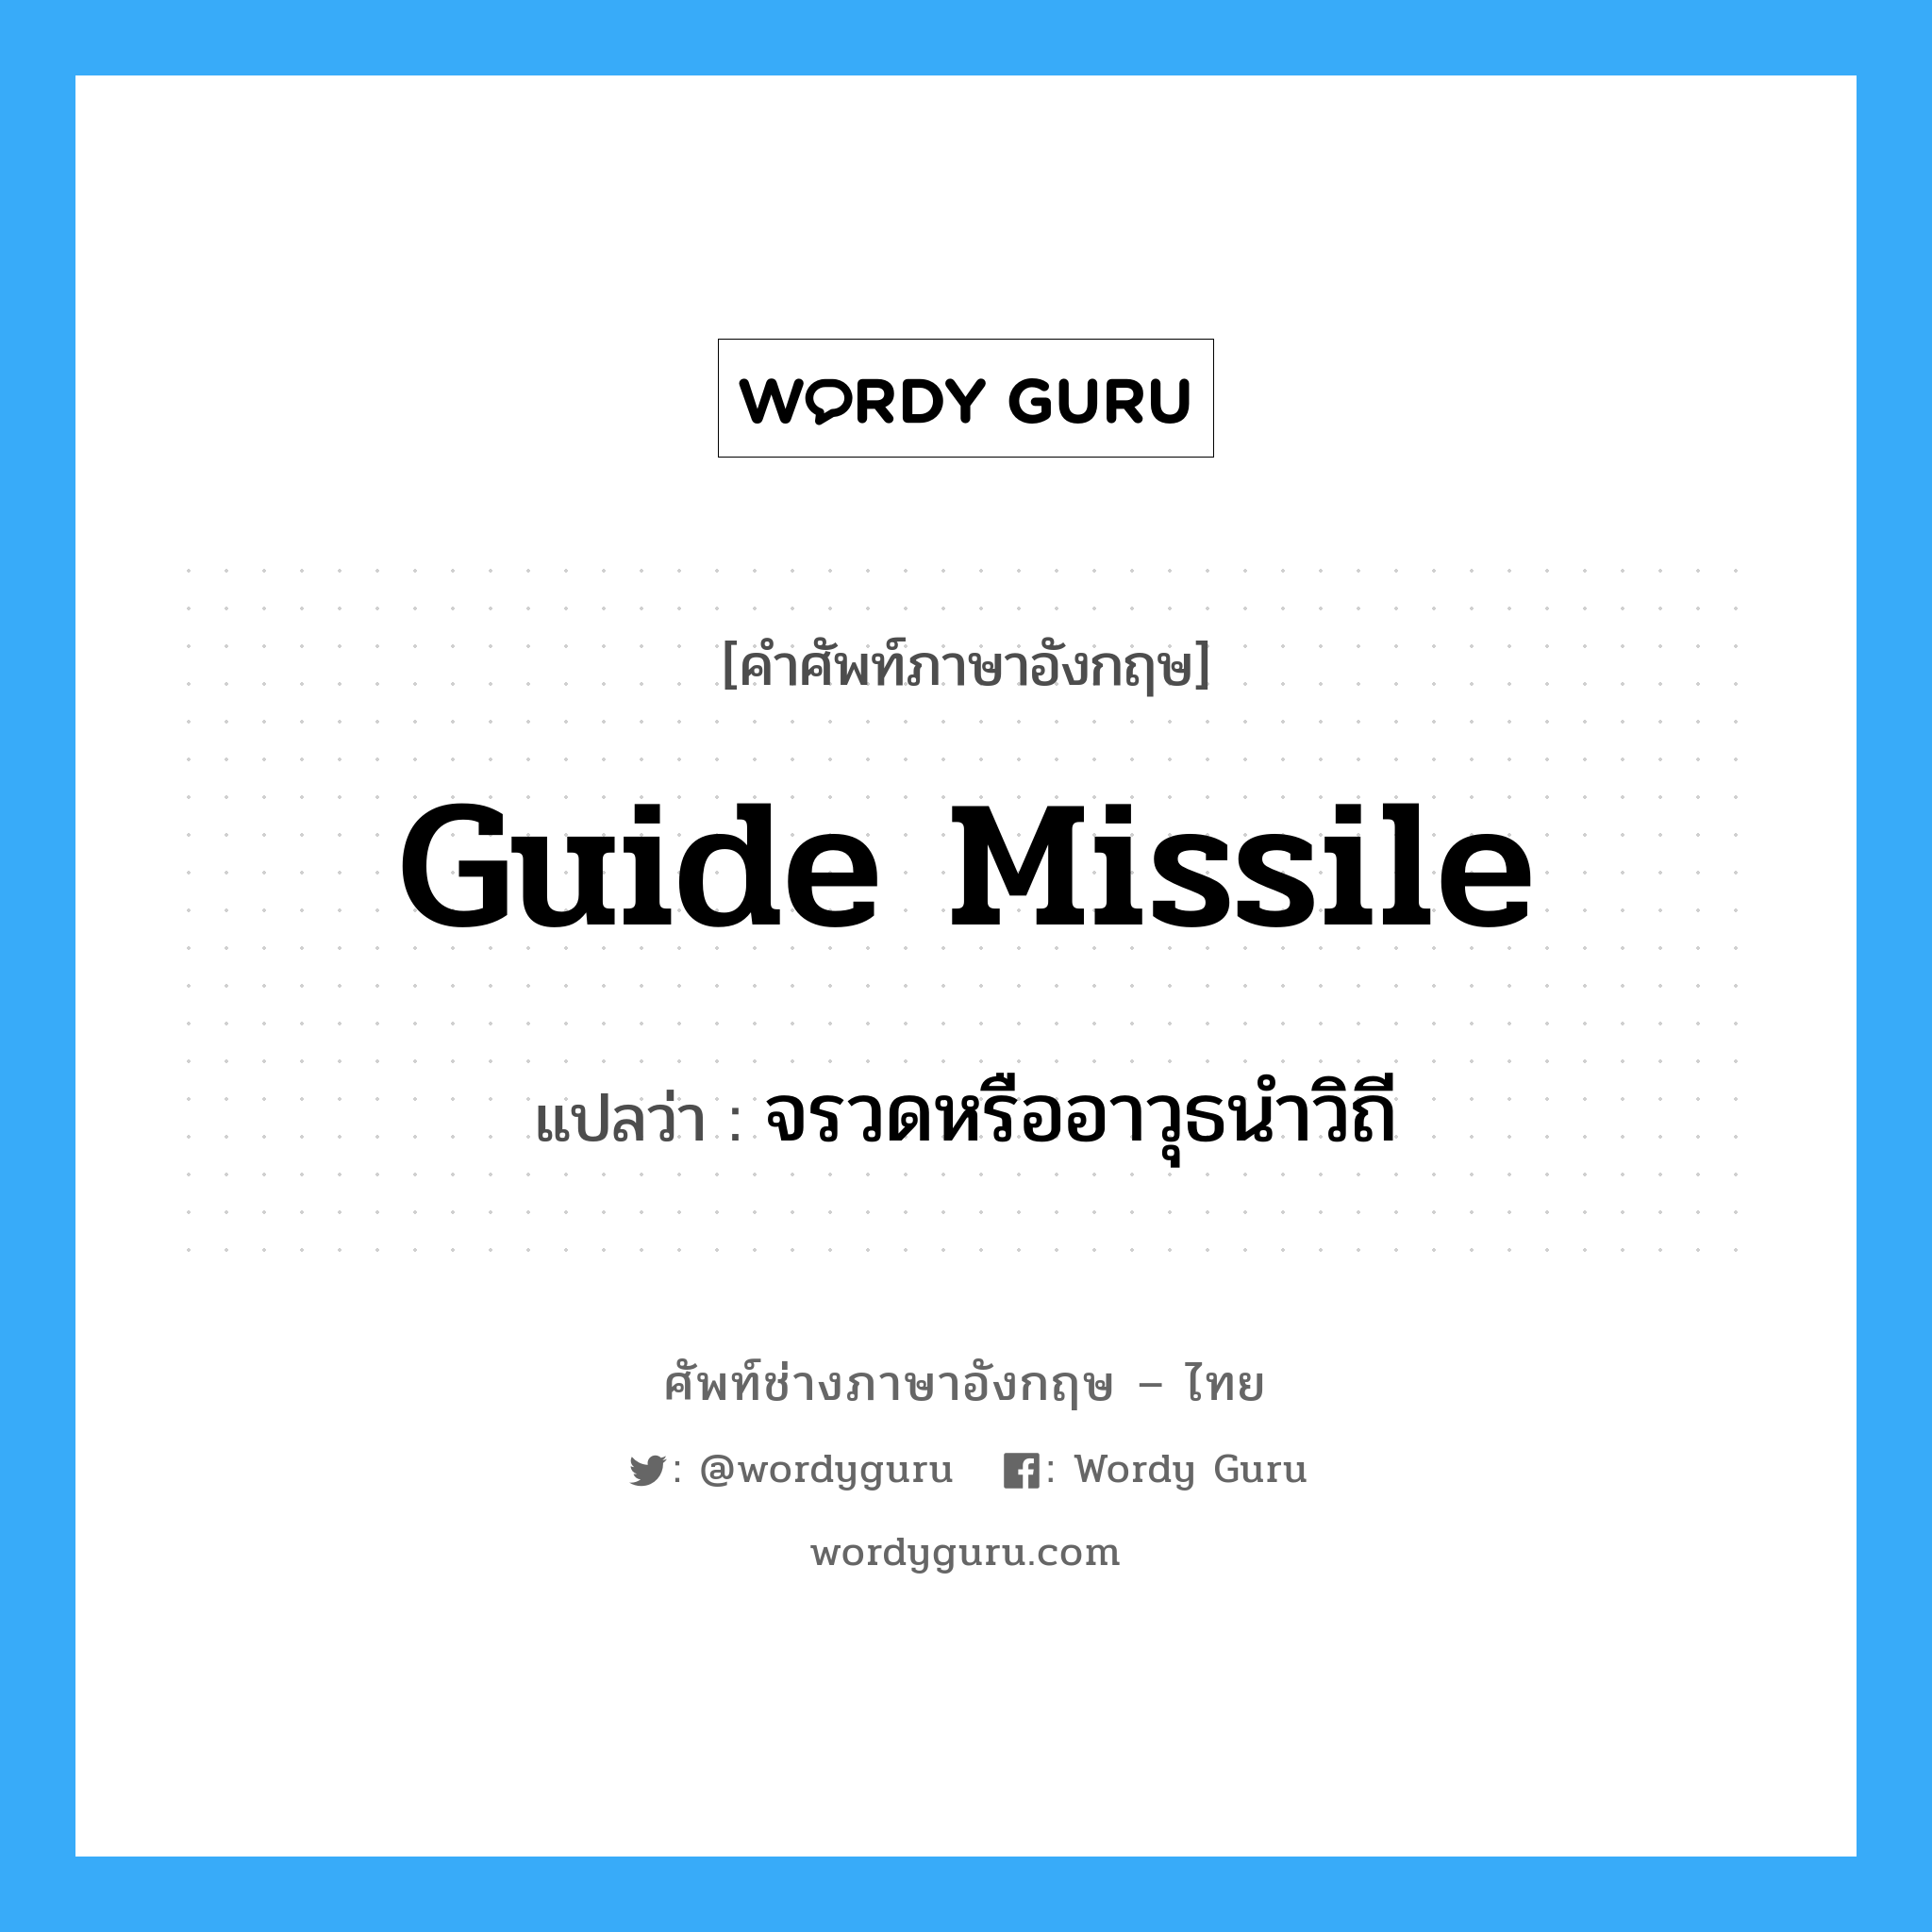 จรวดหรืออาวุธนำวิถี ภาษาอังกฤษ?, คำศัพท์ช่างภาษาอังกฤษ - ไทย จรวดหรืออาวุธนำวิถี คำศัพท์ภาษาอังกฤษ จรวดหรืออาวุธนำวิถี แปลว่า guide missile